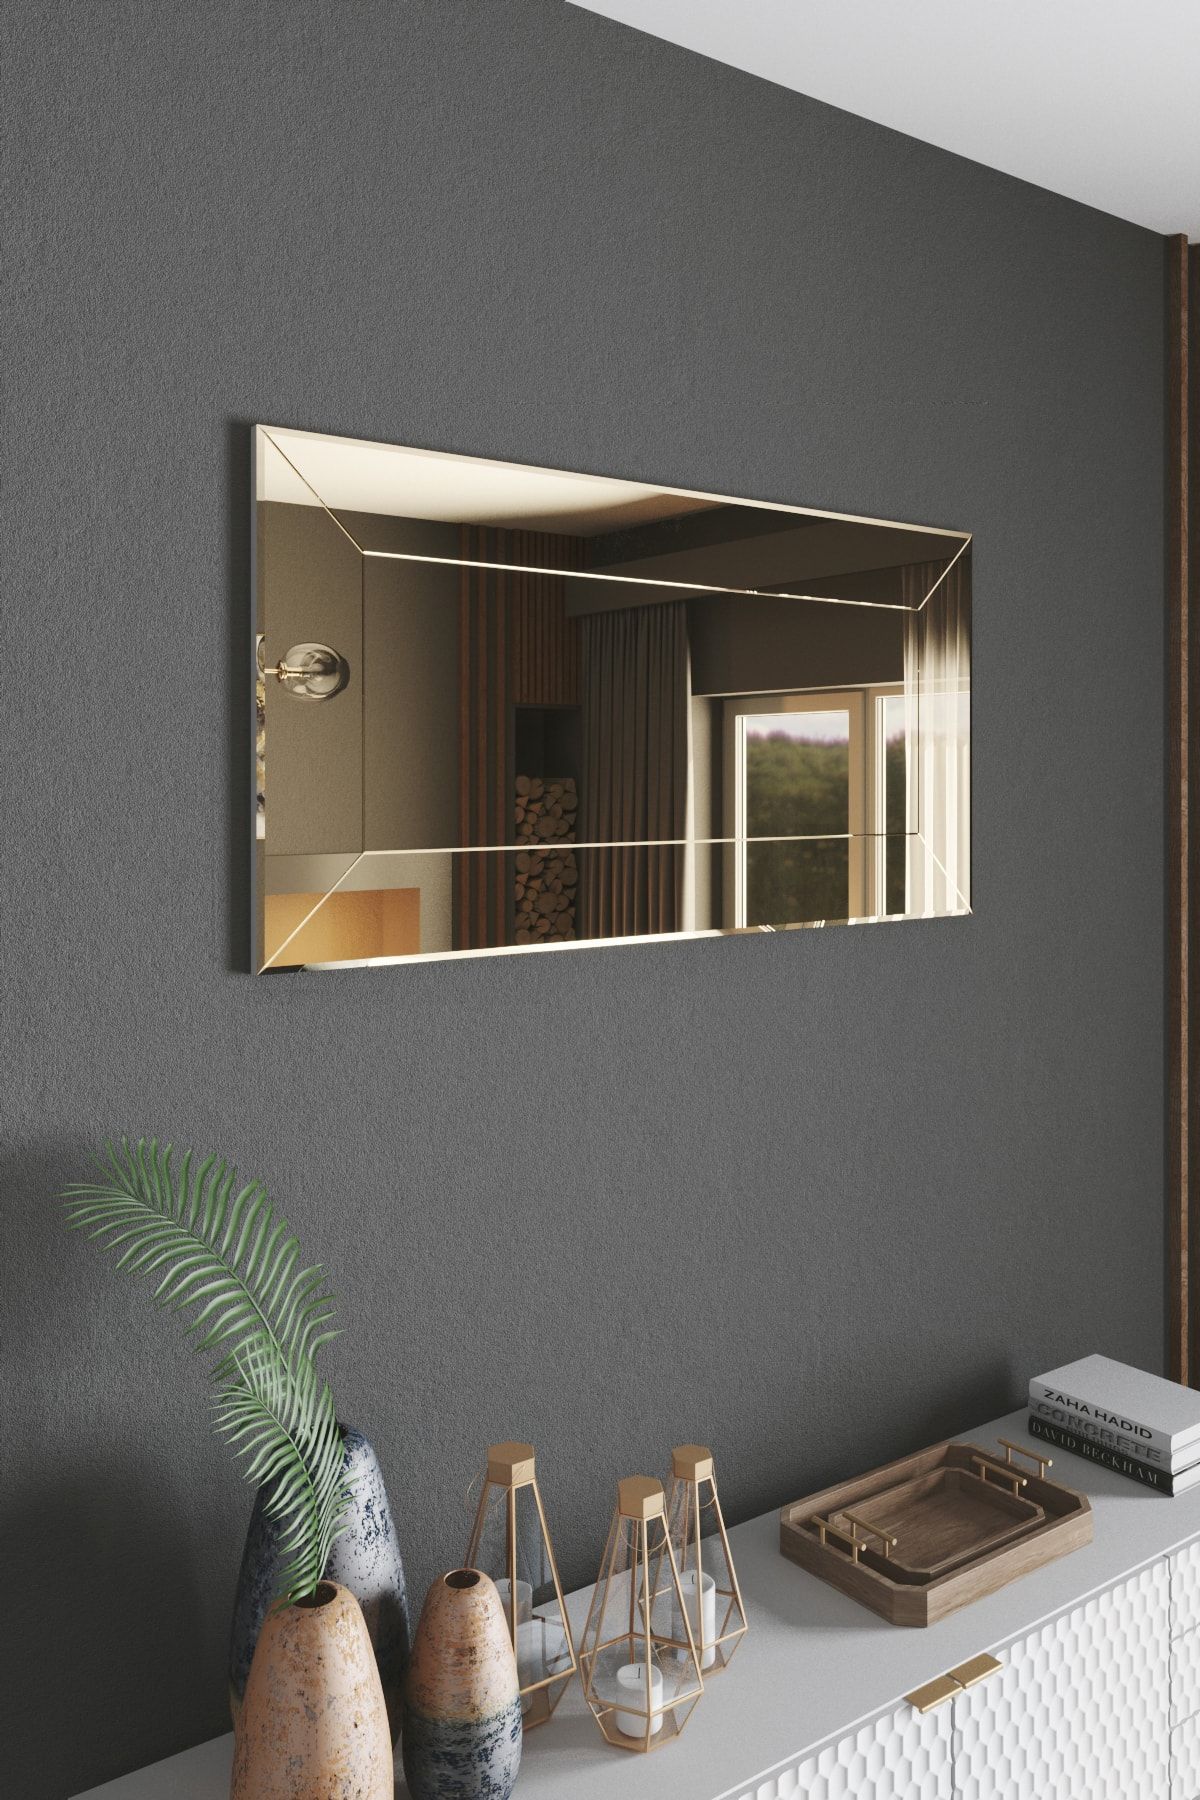 Mirrorline Dekoratif Konsol Ve Boy Aynası Düz Kanallı Bronz Renk 140x70 Cm